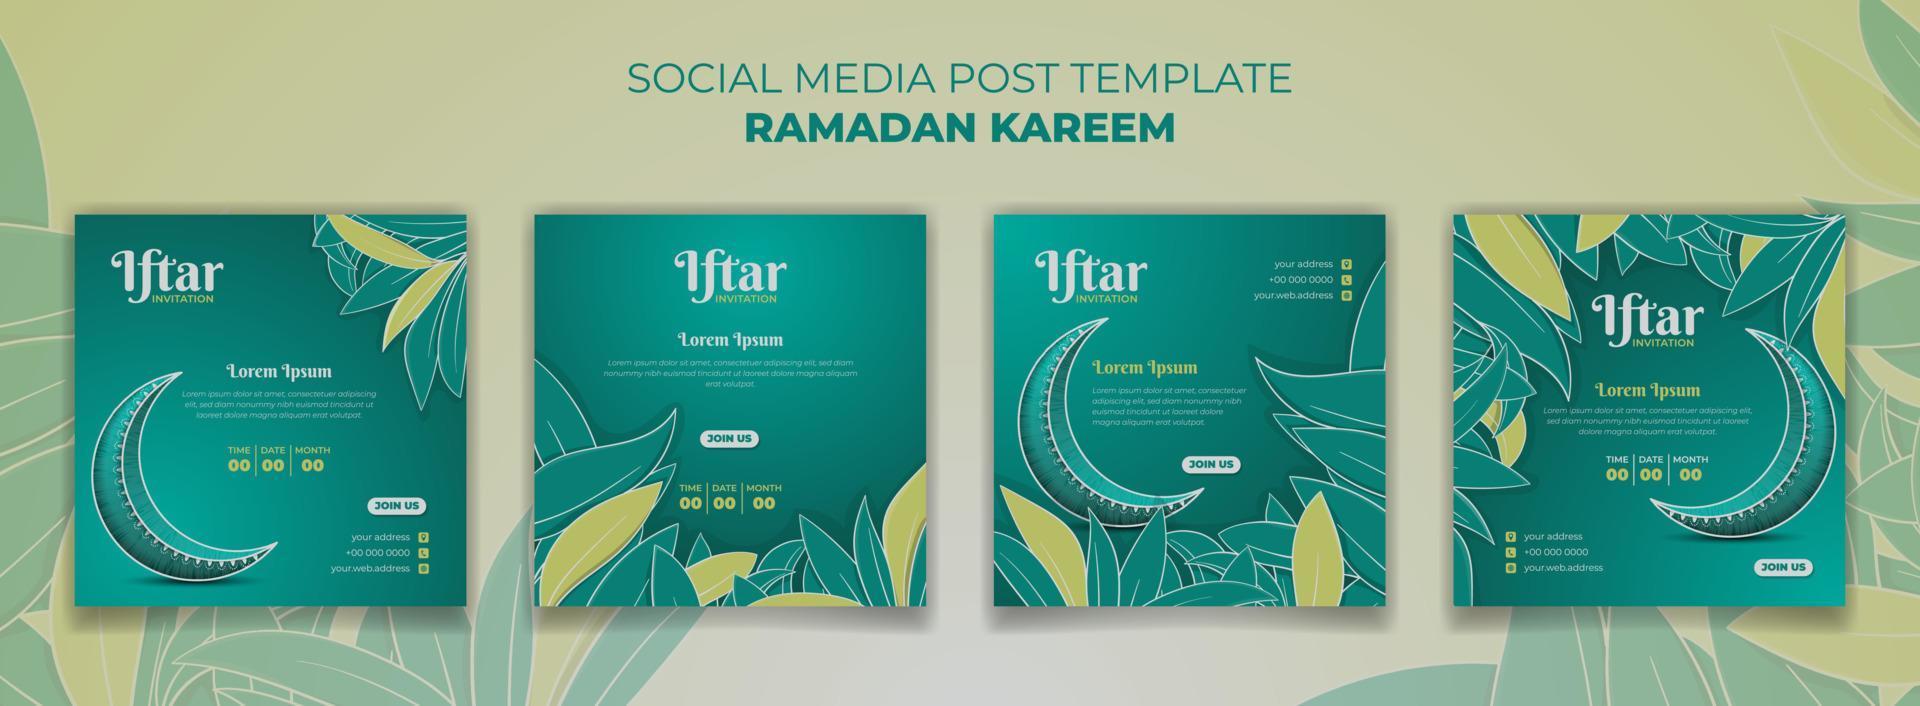 Sozial Medien Post Vorlage im Grün Hintergrund mit Halbmond Mond zum Ramadan kareem Design vektor